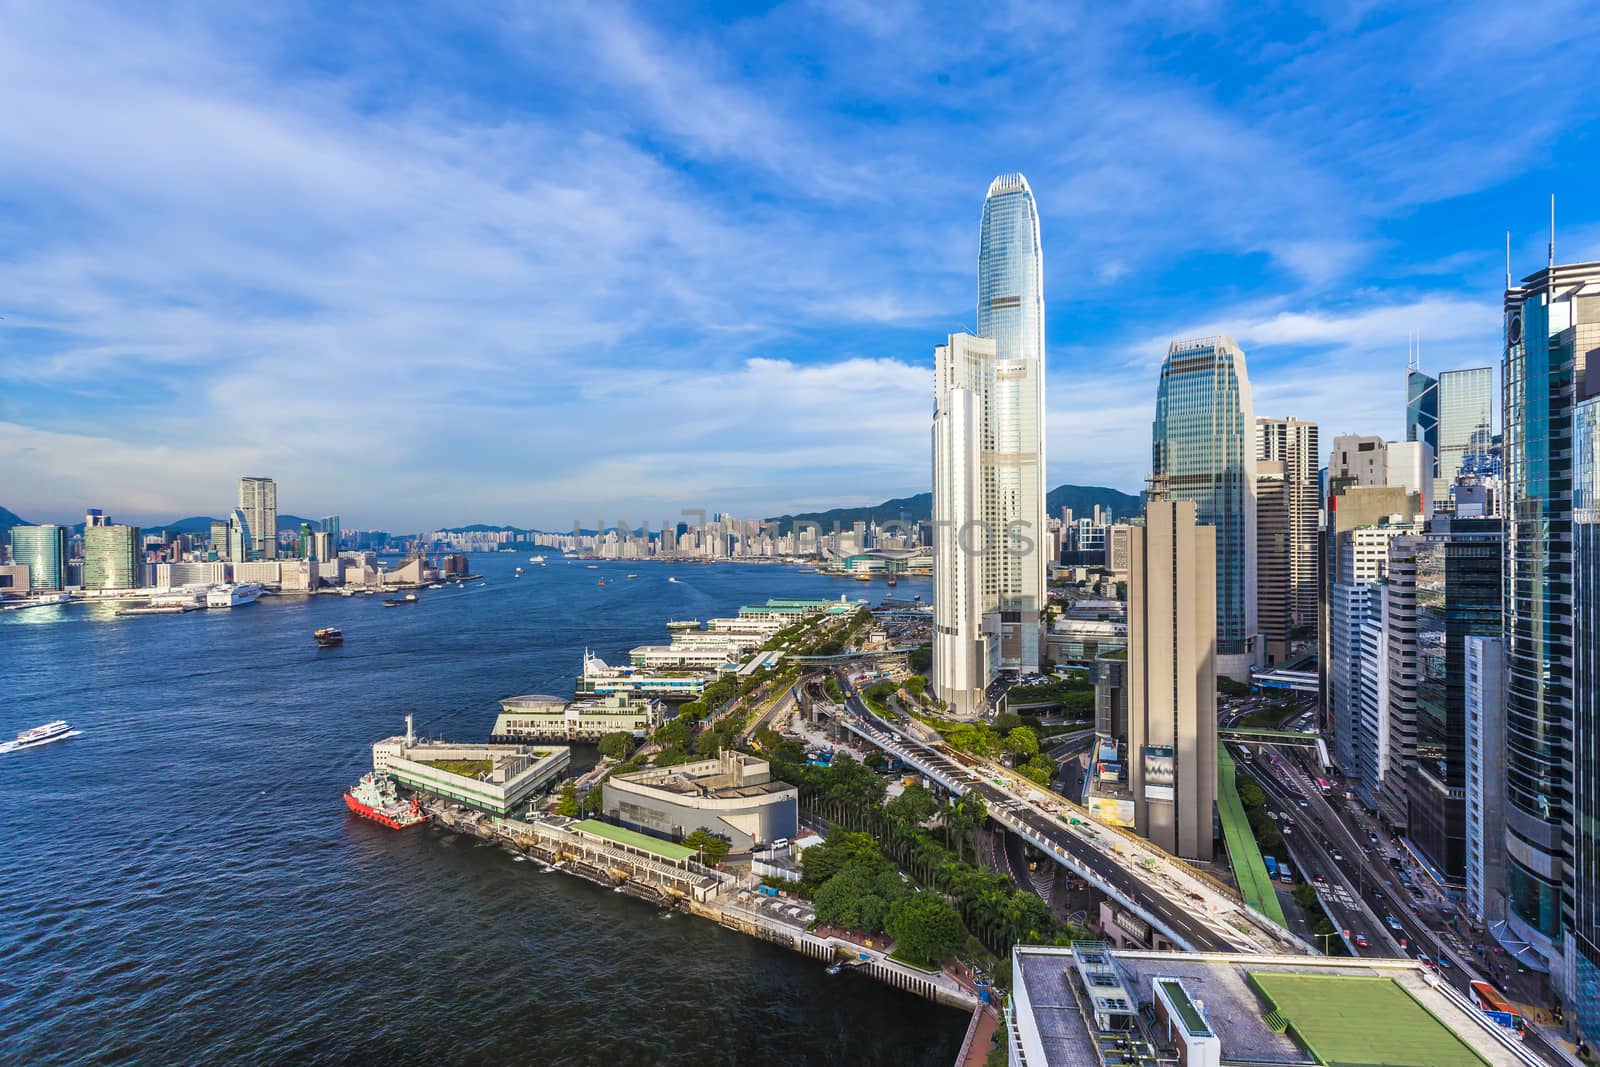 Hong Kong modern city